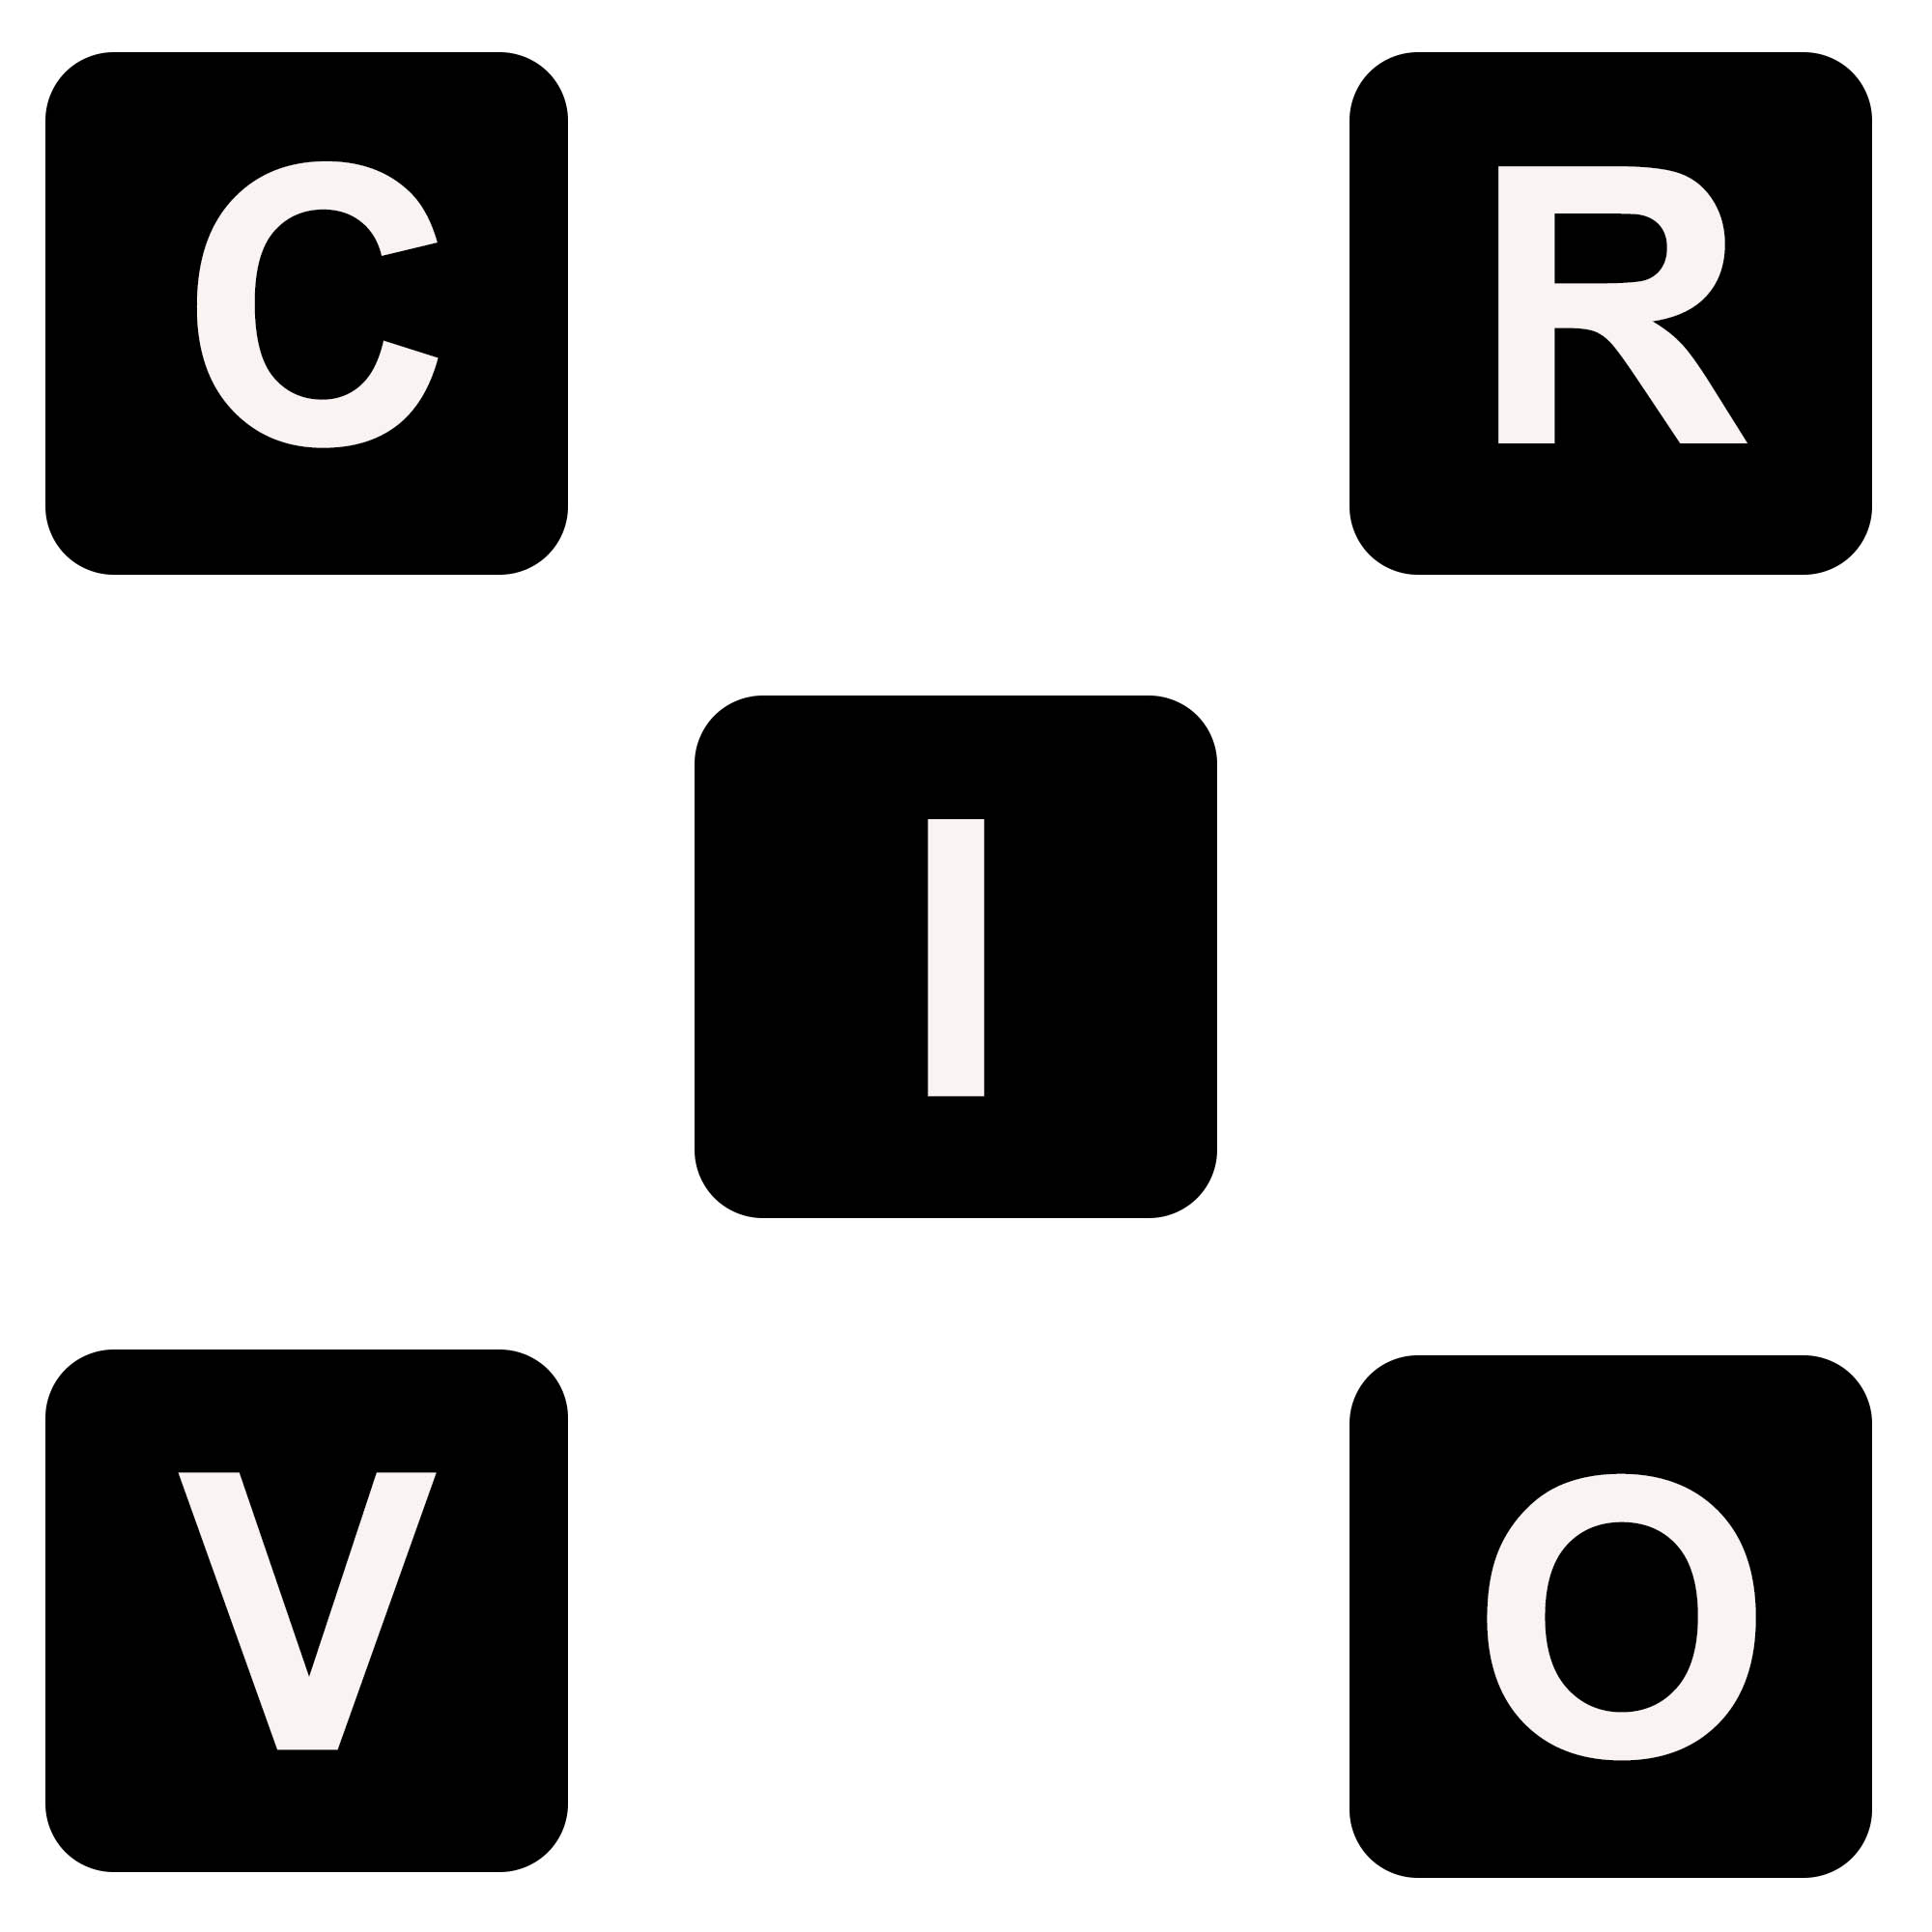 5 Ne r0 r r0 s + r r0 A experiência realizada faz parte do projecto CRIVO, que consiste em 5 detectores expostos como se observa na figura.